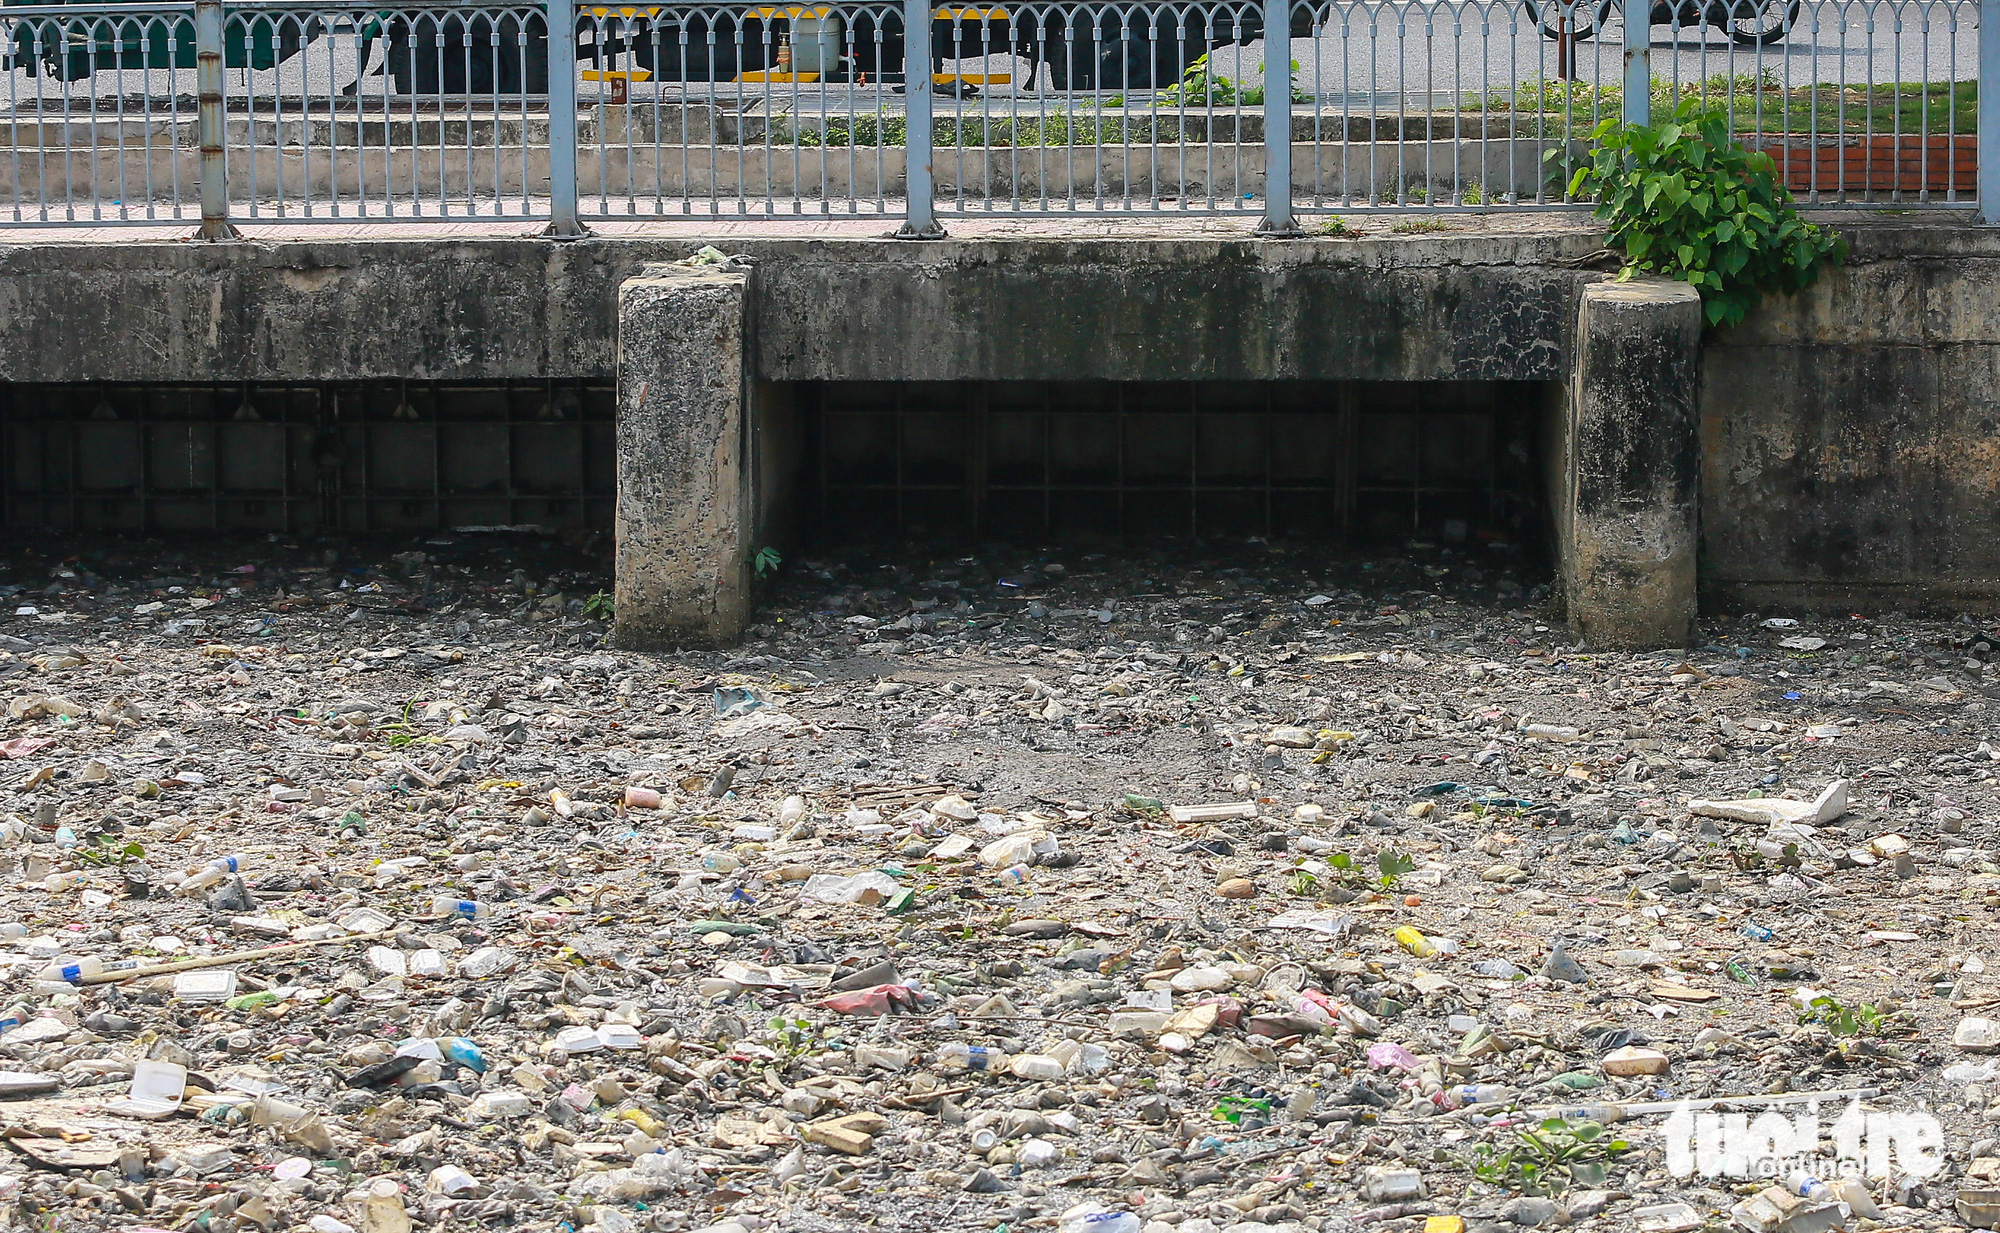 Sau mưa, cá chết, rác nổi lềnh bềnh trên kênh Nhiêu Lộc - Thị Nghè - Ảnh 6.